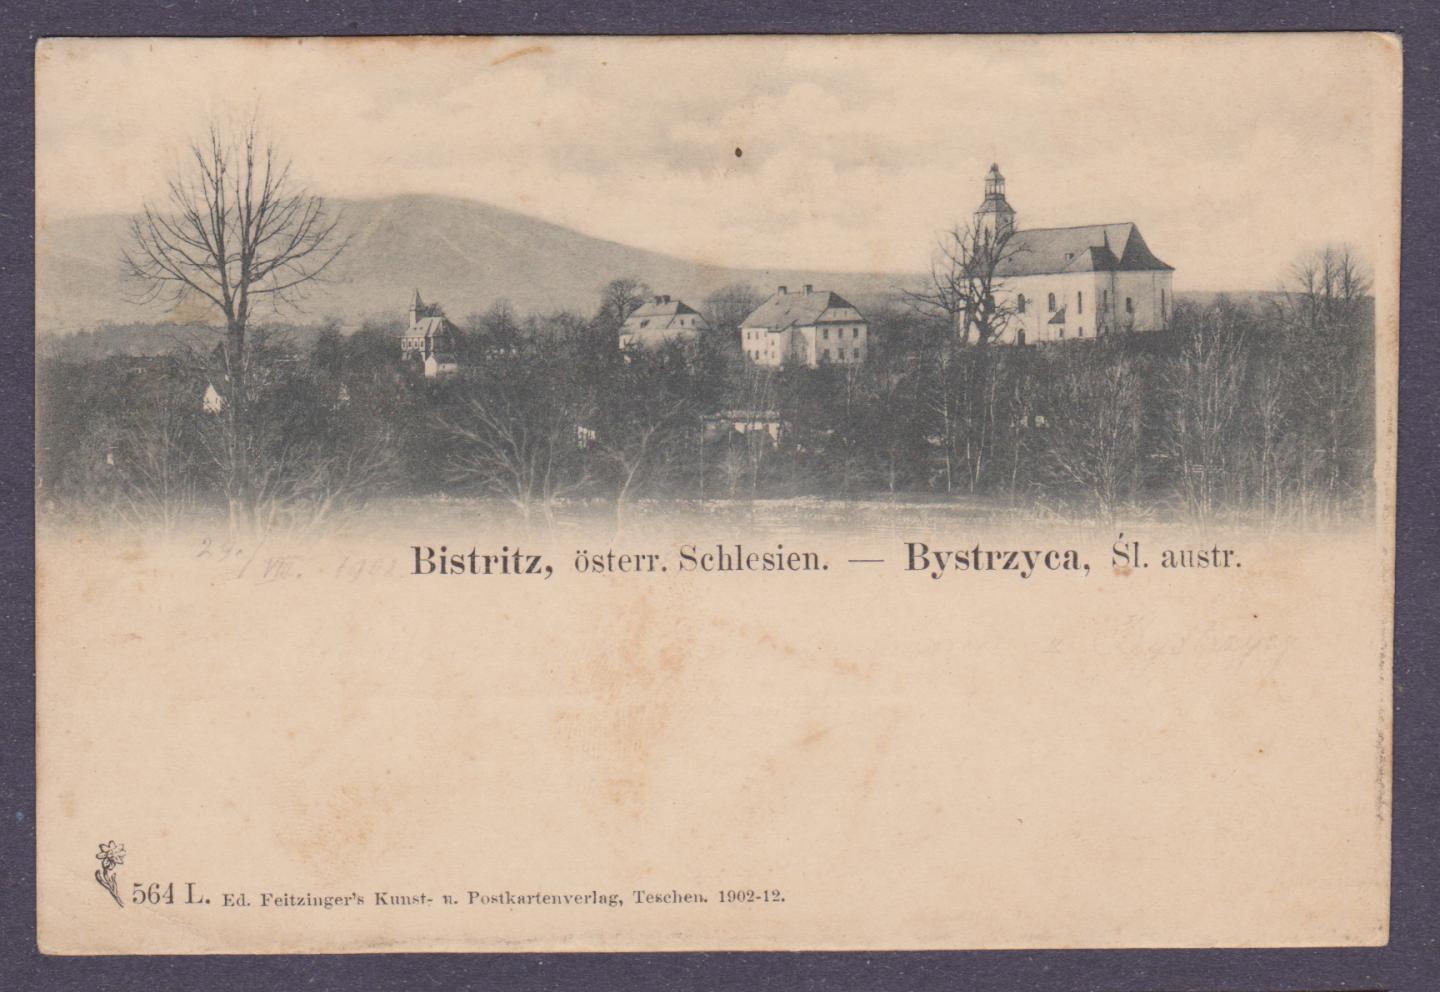 Bystrzyca - Feitzinger´s Kunst - u.Postkartenverlag,Teschen,1902 - 12. - wysłana z Bistritz 29.8.1902